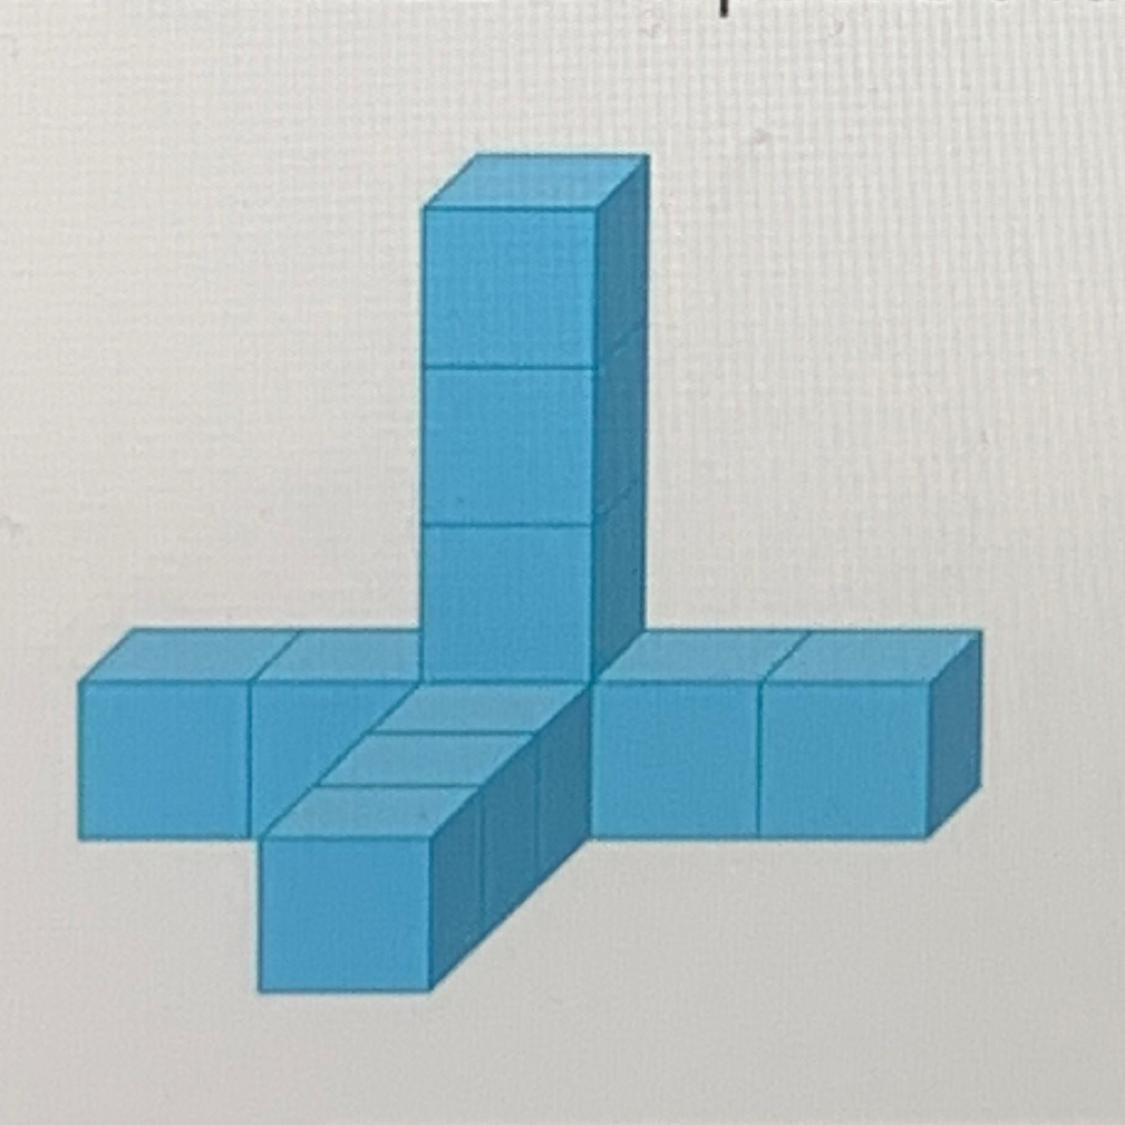 Из одинаковых кубиков изобразили стороны. Фигуры из кубиков. Фигуры из одинаковых кубиков. Фигуру из одинаковых кубиков поместили в коробку. Изобразить фигуру из кубиков.